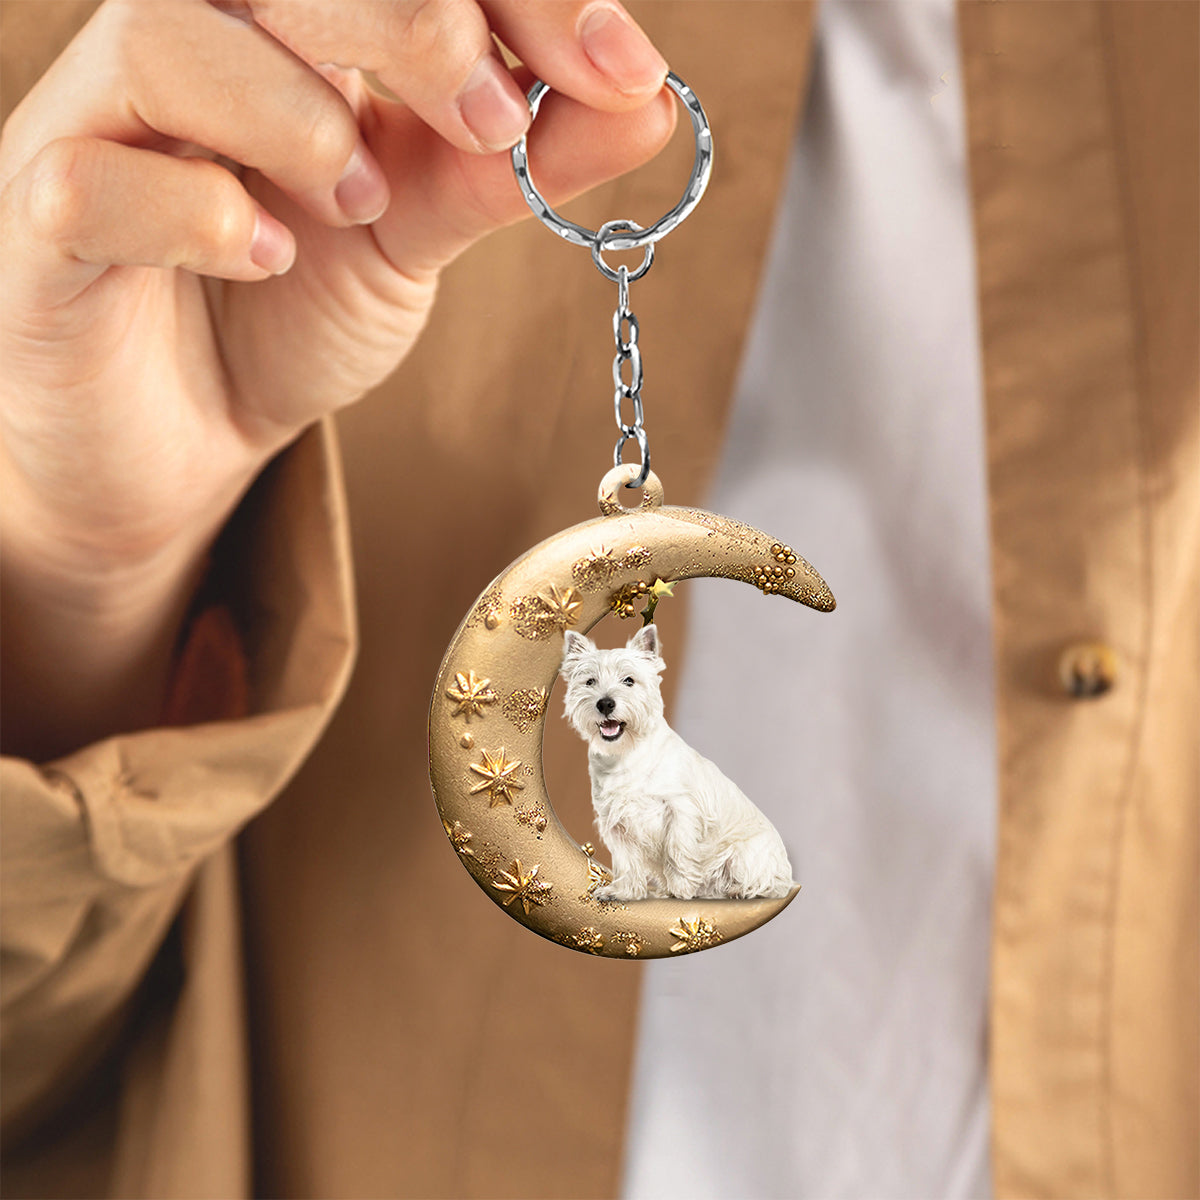 West highland white terrier -Dog & Moon Flat Acrylic Keychain